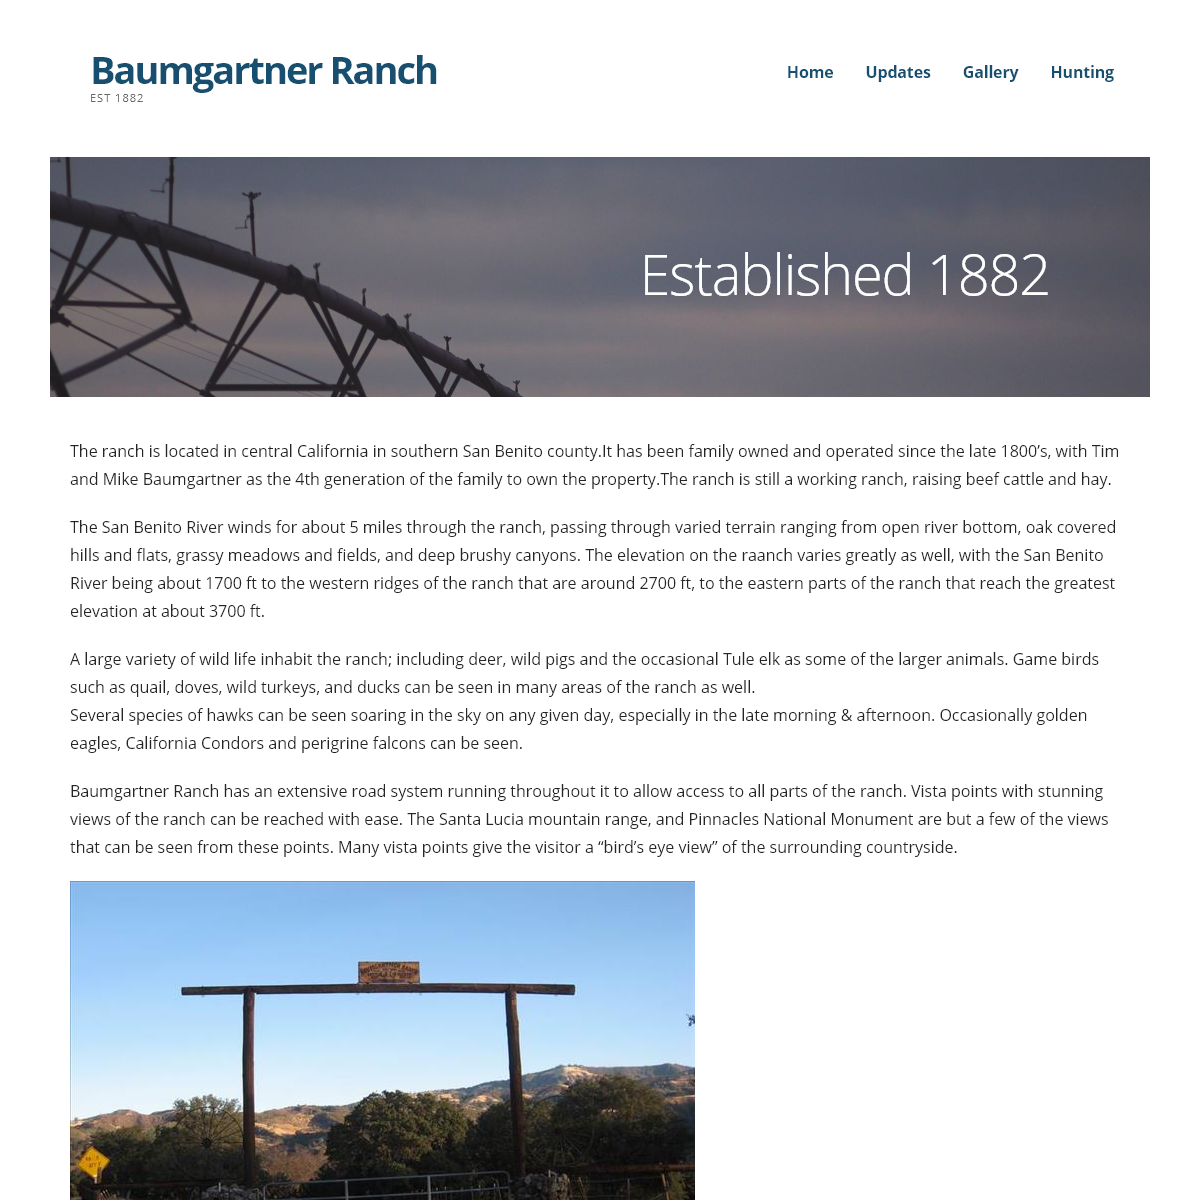 A complete backup of baumgartnerranch.com